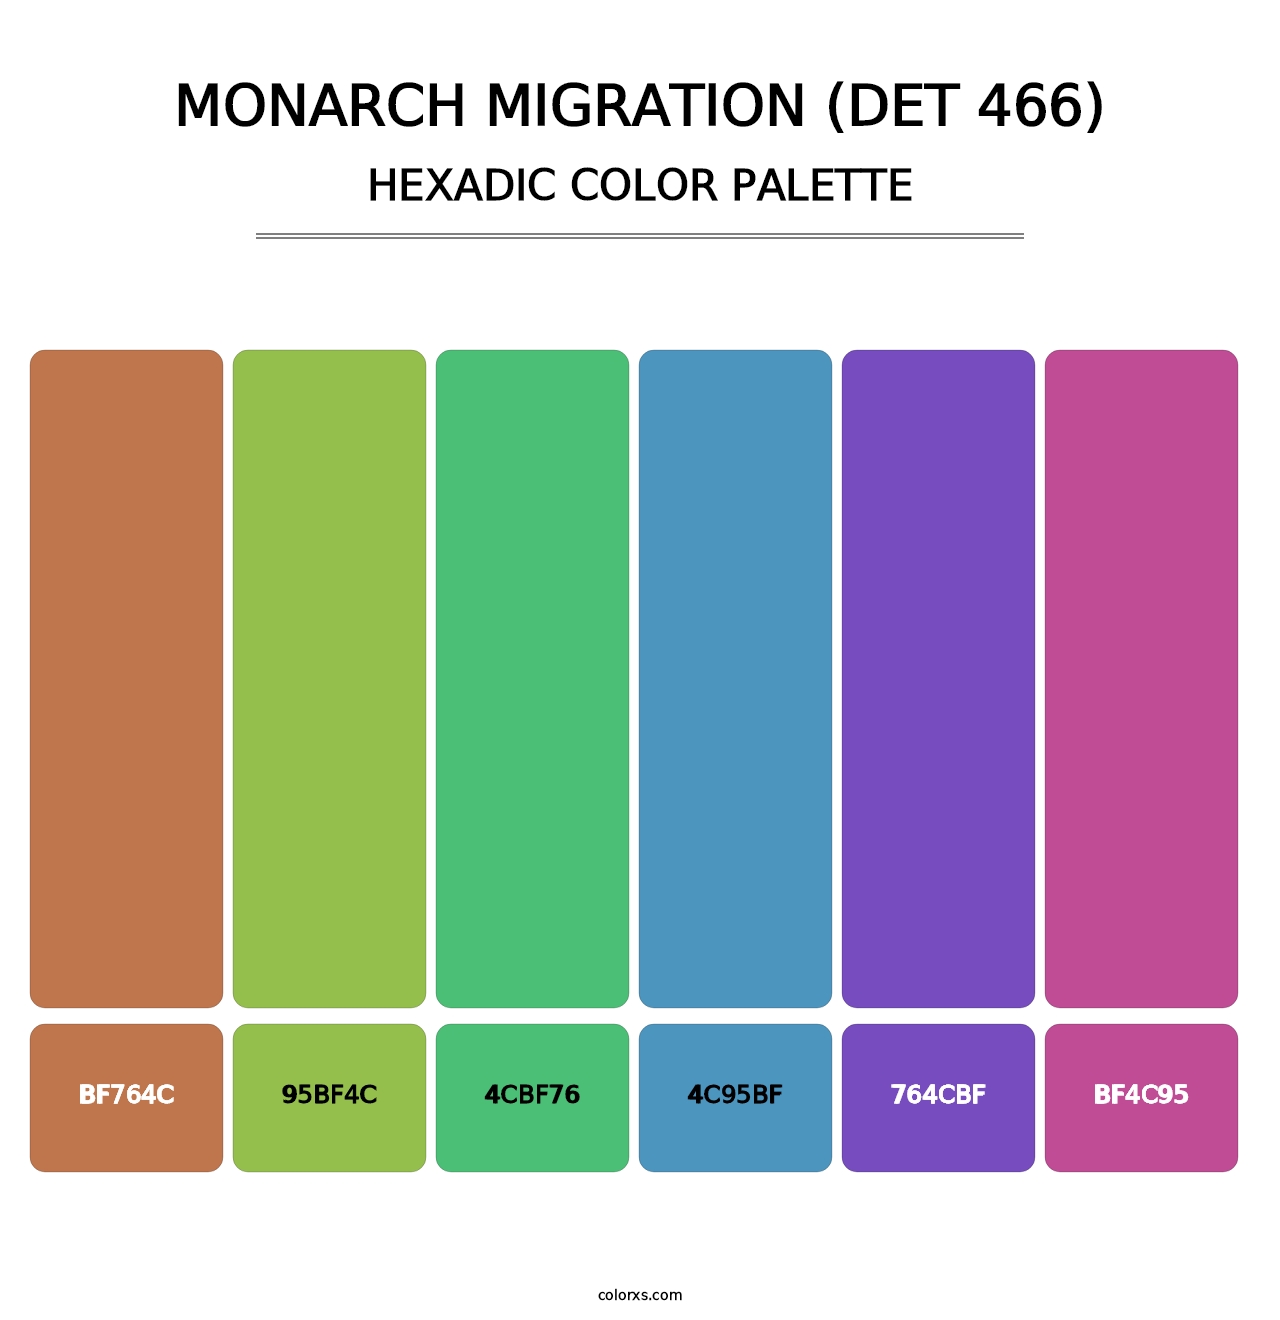 Monarch Migration (DET 466) - Hexadic Color Palette